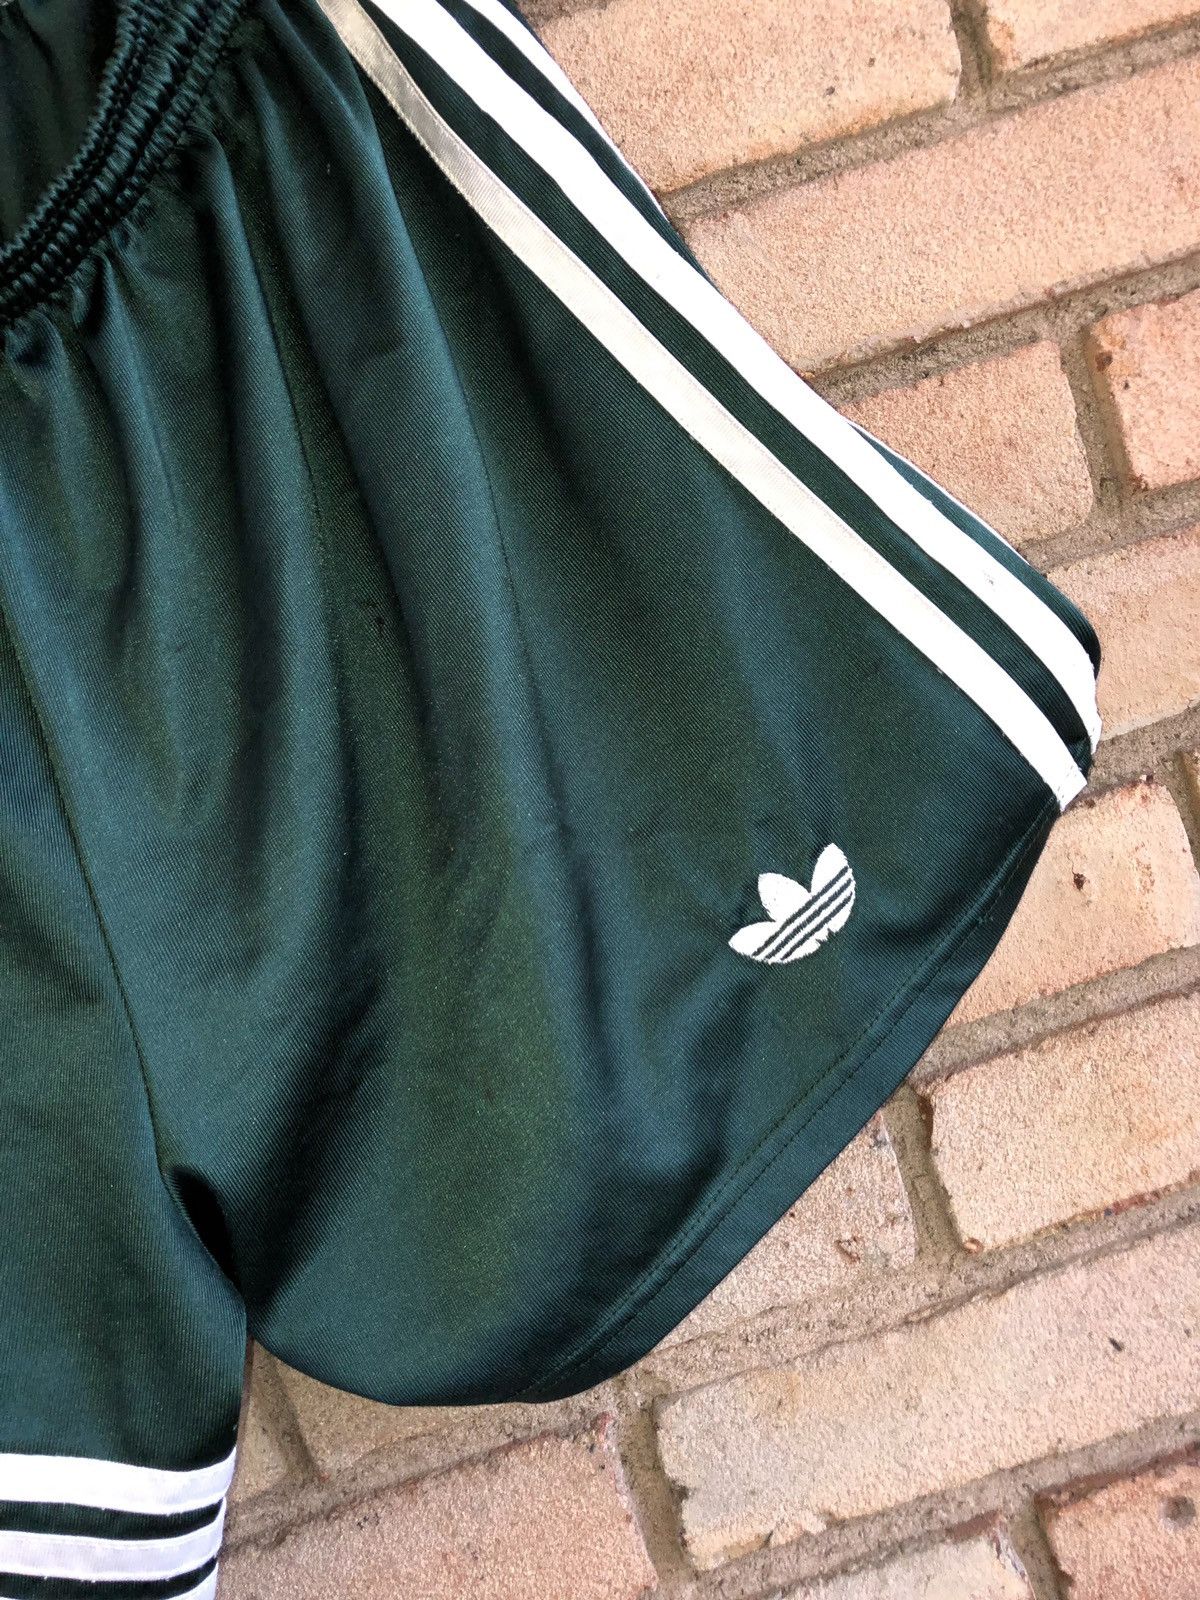 Adidas Vintage Adidas Originals Silk Shorts Size US 29 - 3 Thumbnail